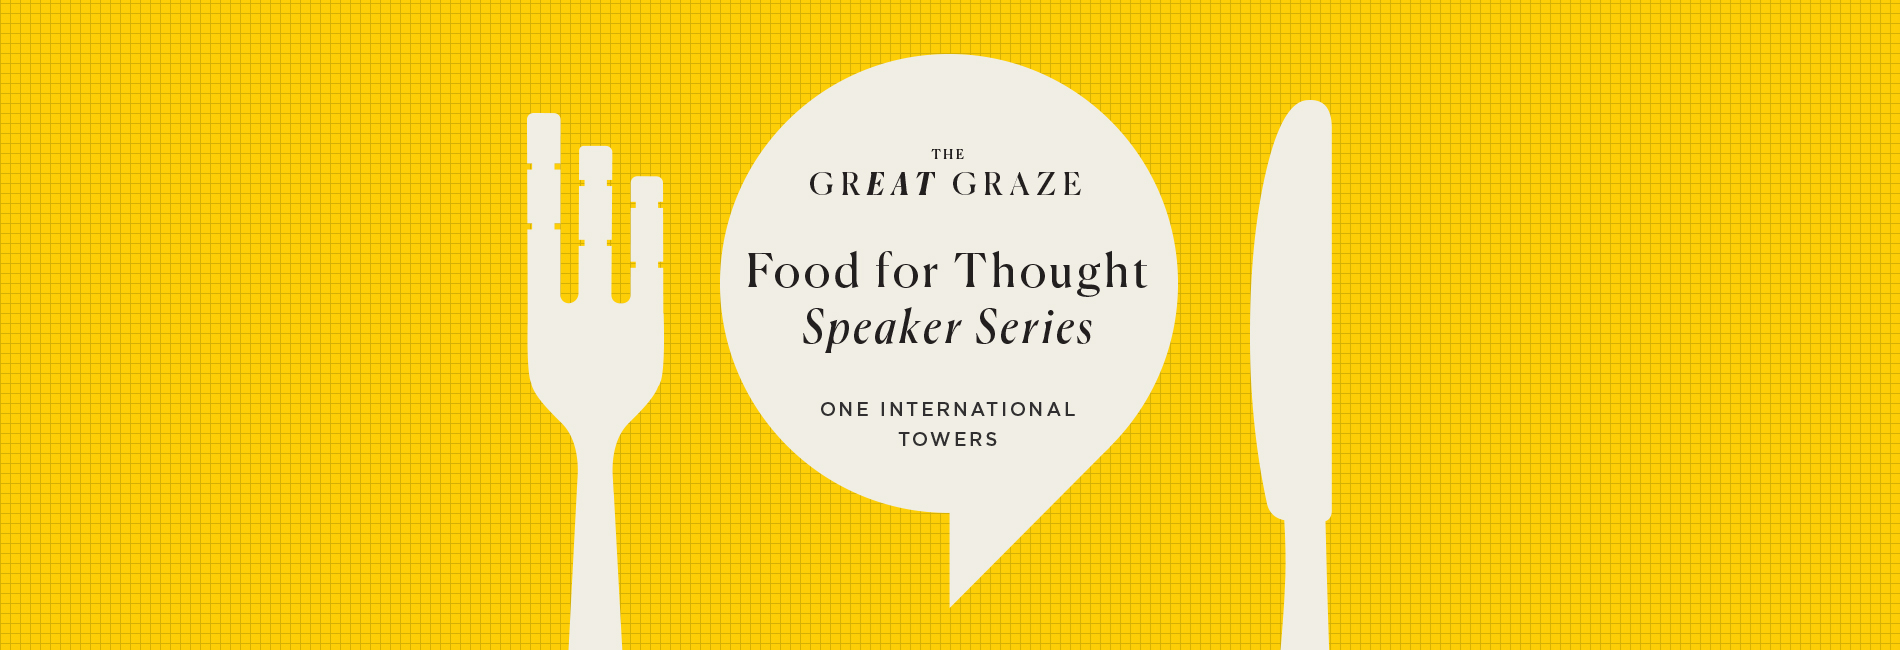 GreatGraze-SpeakerSeries-banner-1900-x-650-v2.jpg